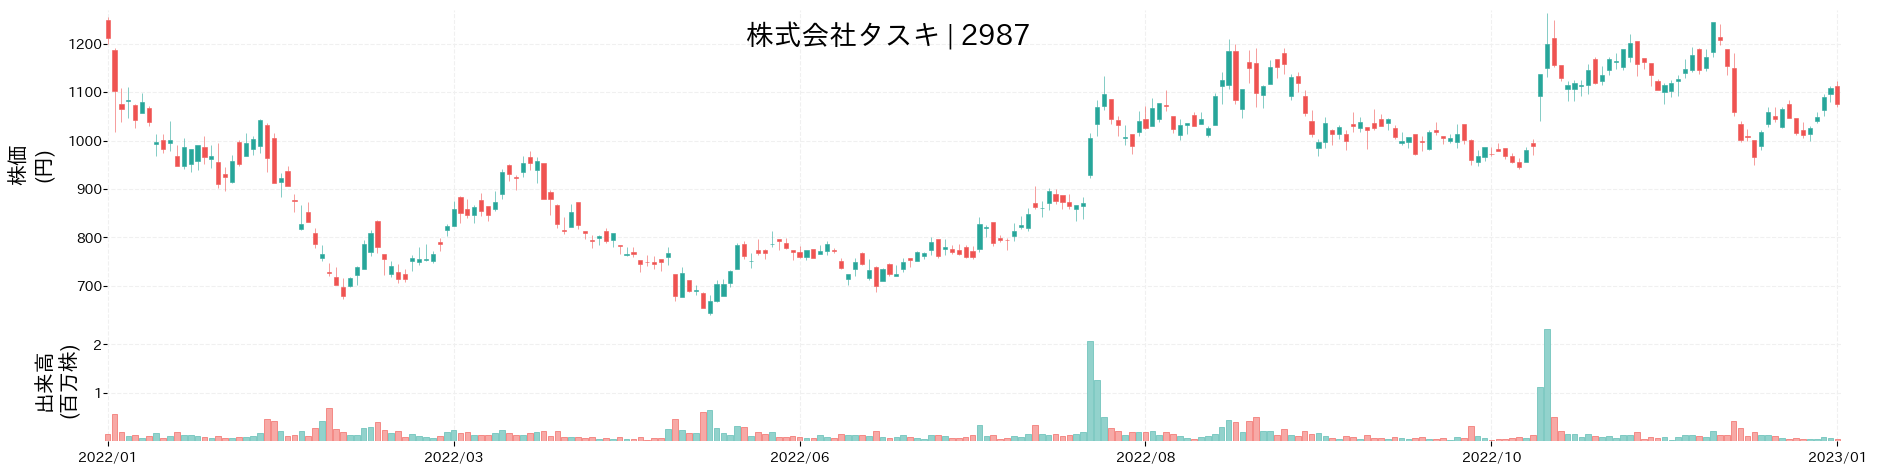 タスキの株価推移(2022)